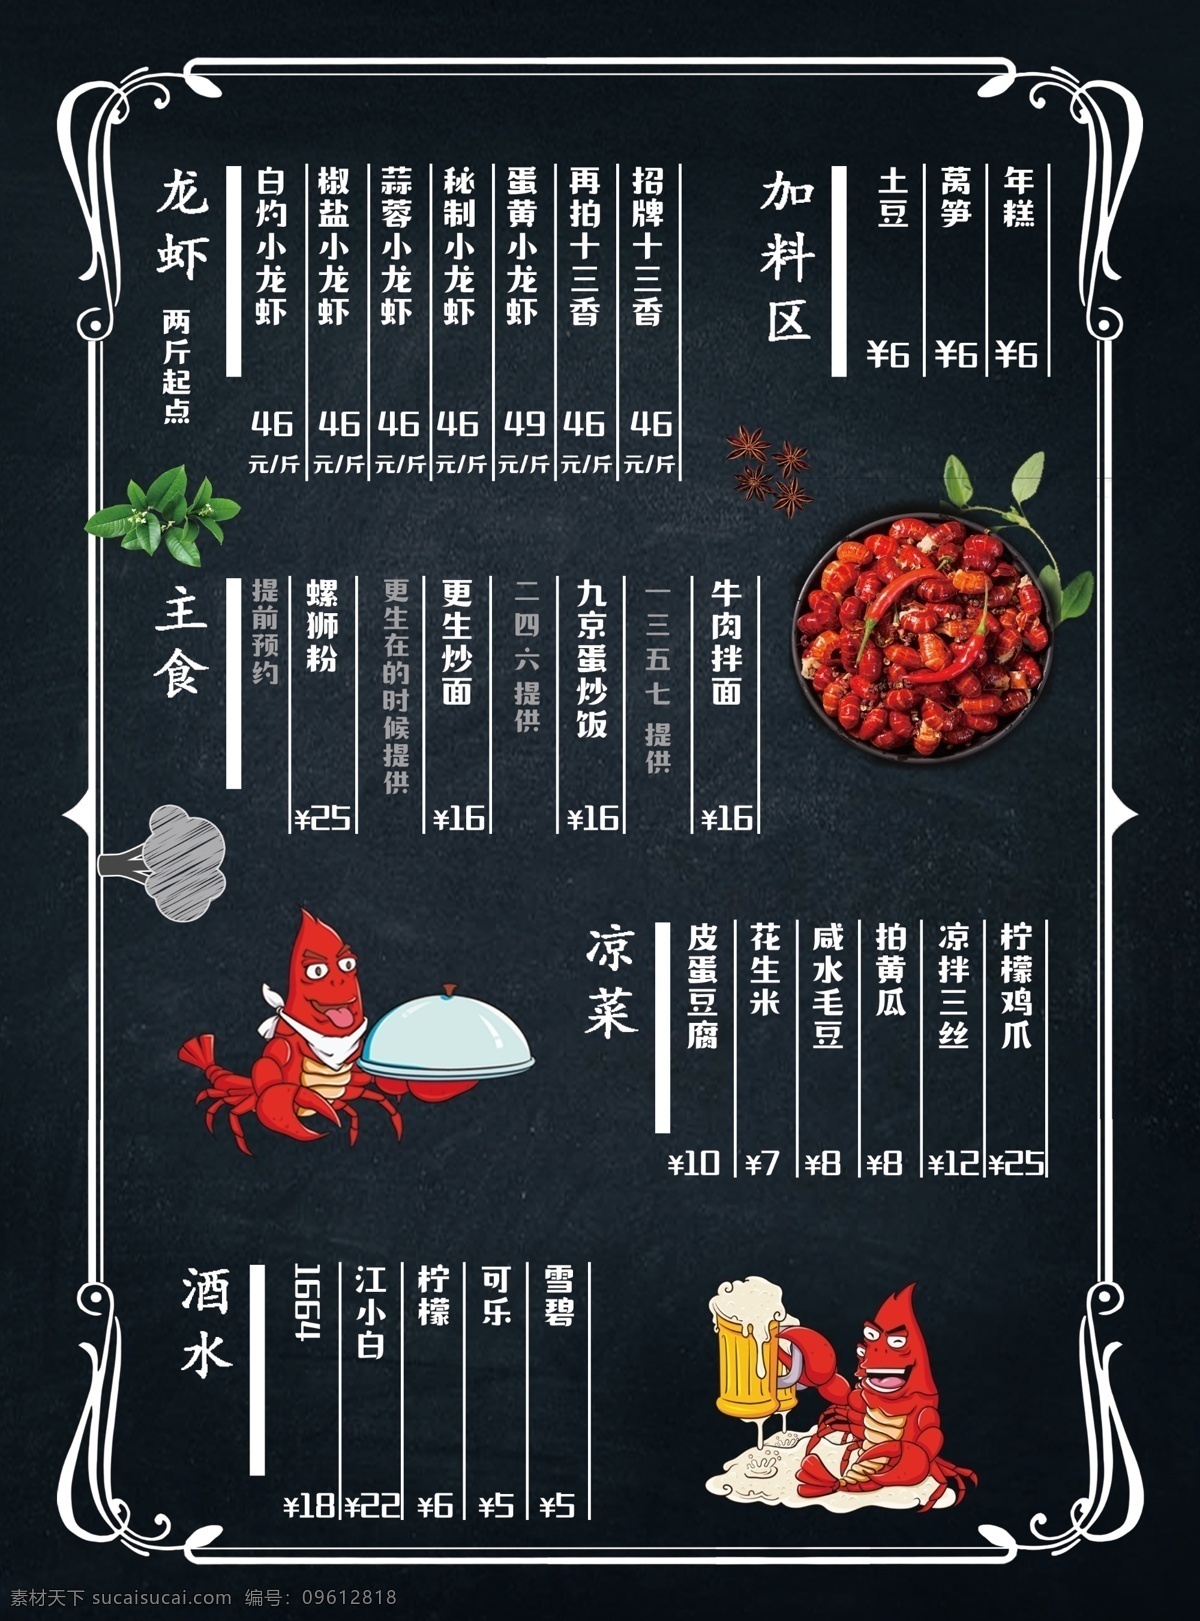 龙虾菜单 龙虾 菜单 黑色 竖版菜单 龙虾图片 卡通龙虾 高档菜单 手绘龙虾 菜单菜谱